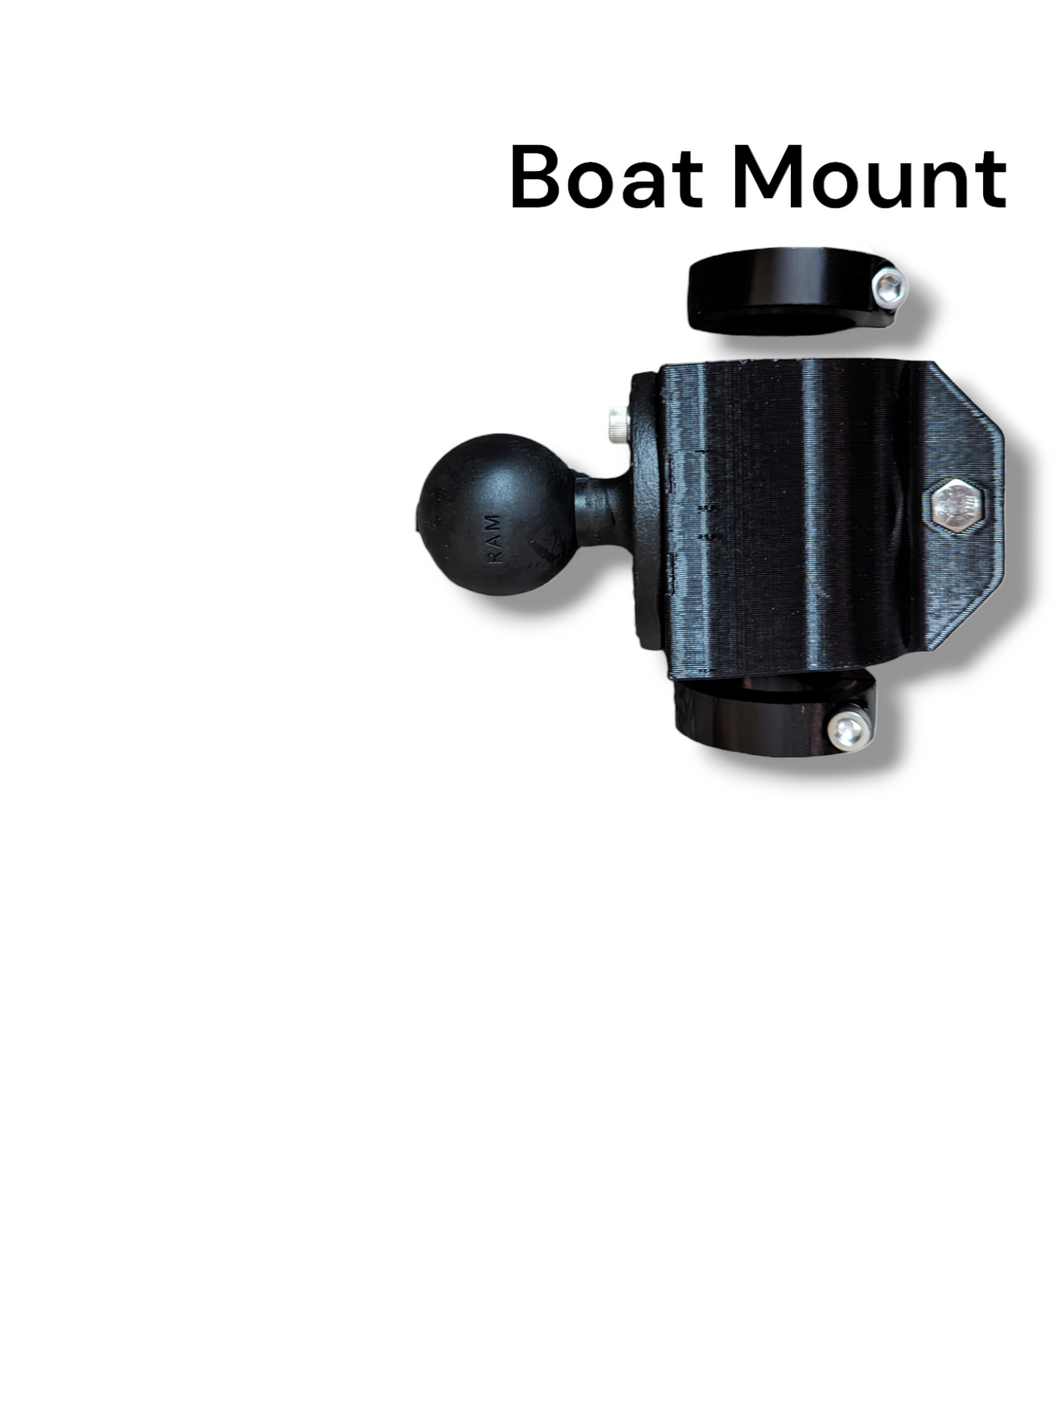 Summit Boat Mount Kit